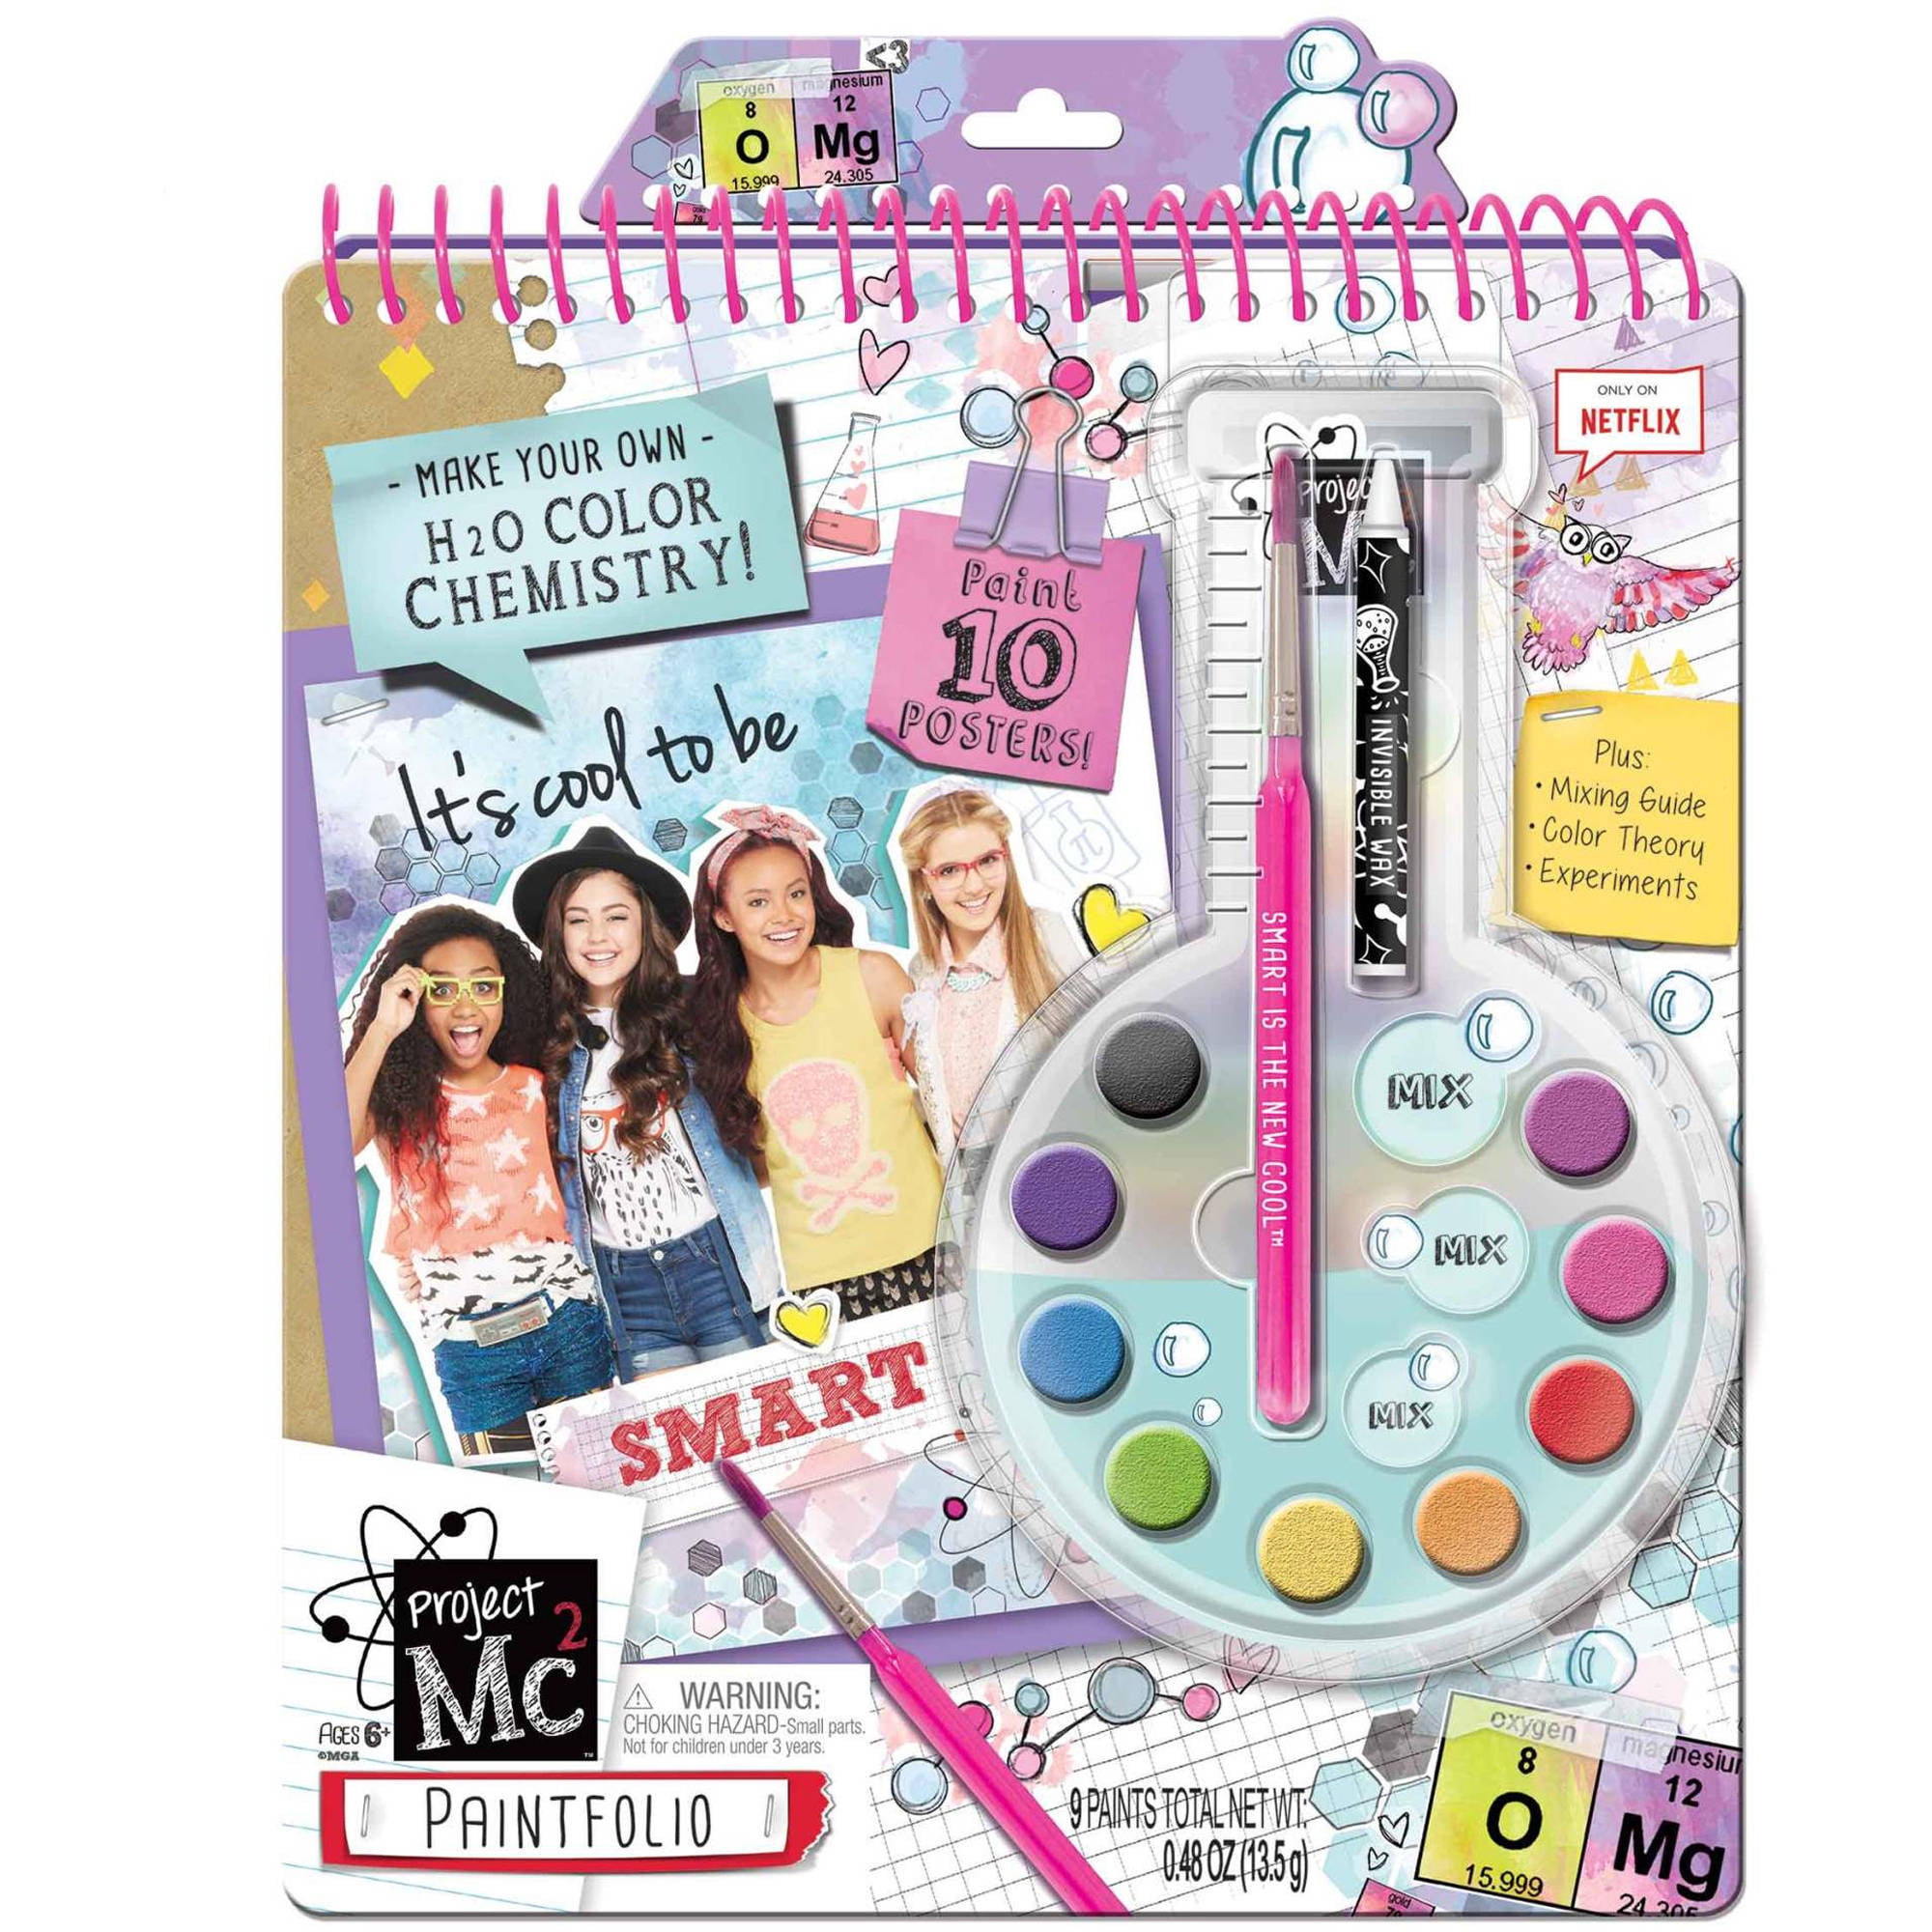 project mc2 crayon makeup science kit toy